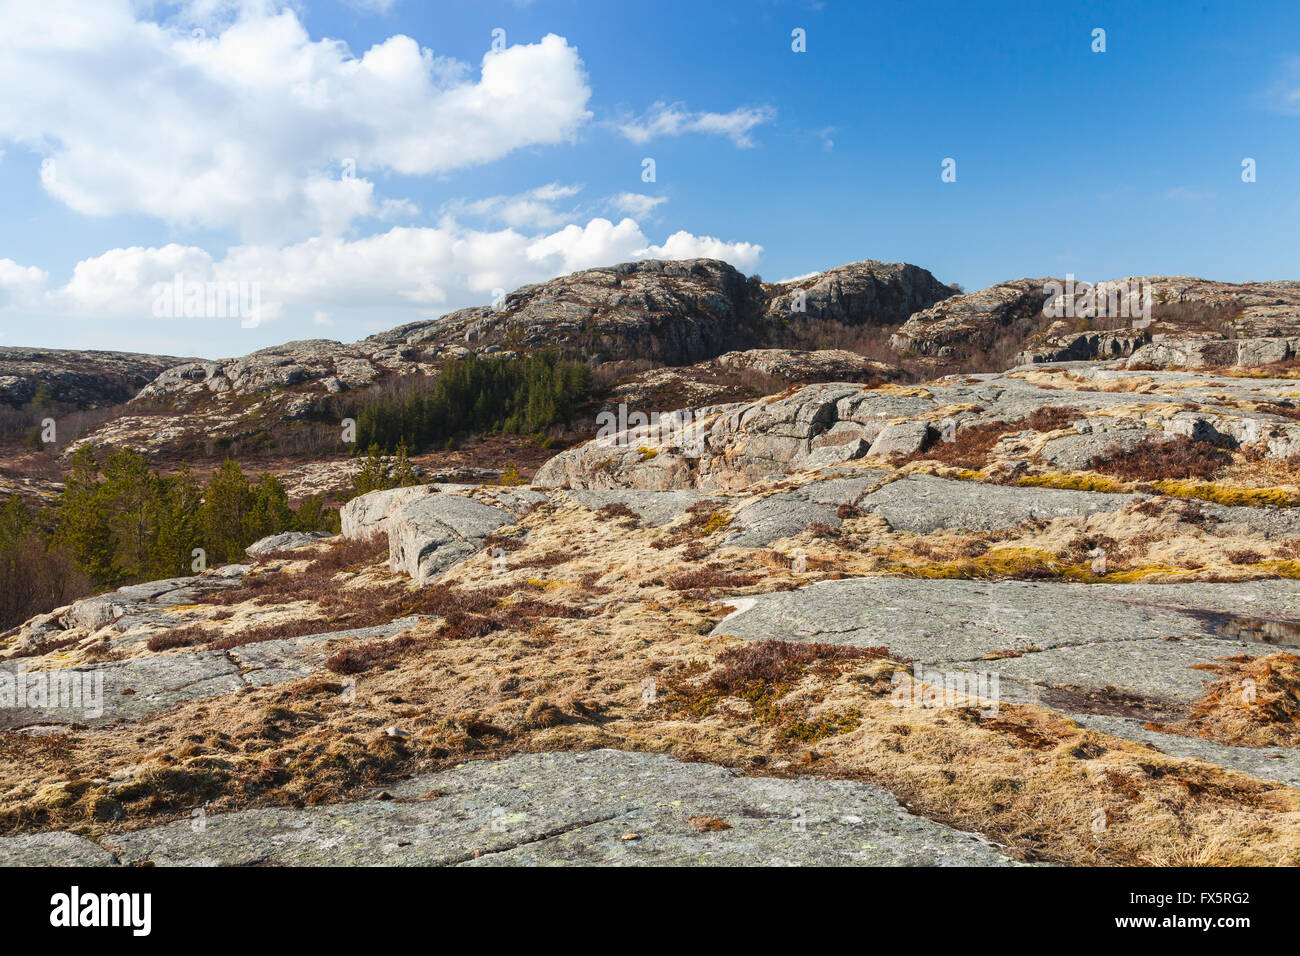 Paysage de montagne norvégienne avec des roches sous ciel bleu Banque D'Images